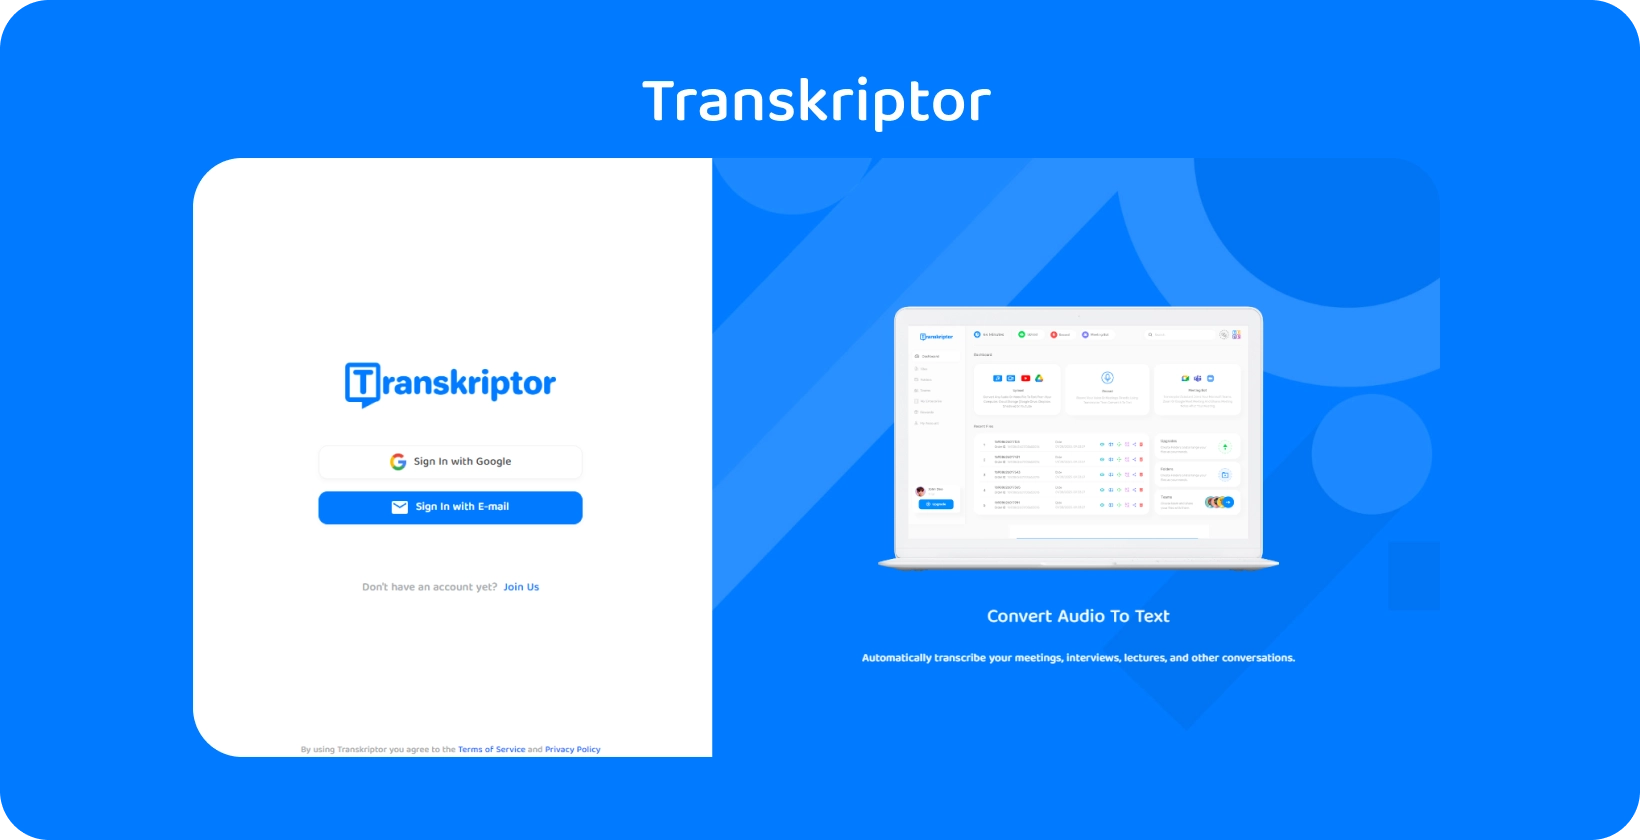 Interfaccia dell'app Transkriptor che mostra semplici servizi di trascrizione da audio a testo per approfondimenti sulle cartelle cliniche.